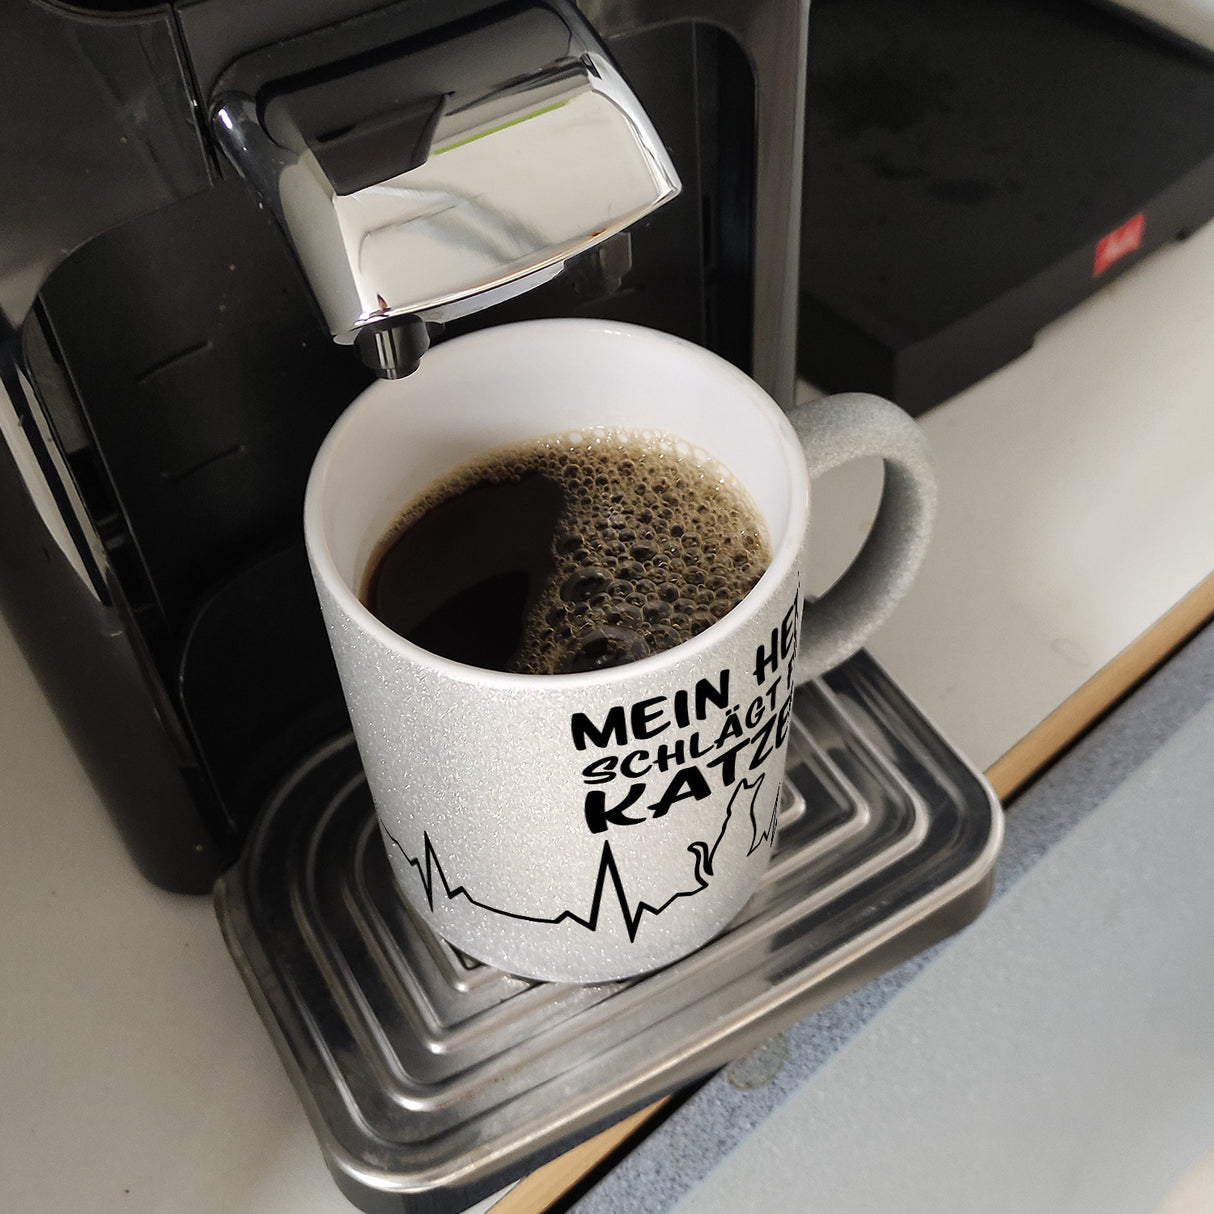 Mein Herz schlägt für Katzen Kaffeebecher mit süßem EKG Motiv